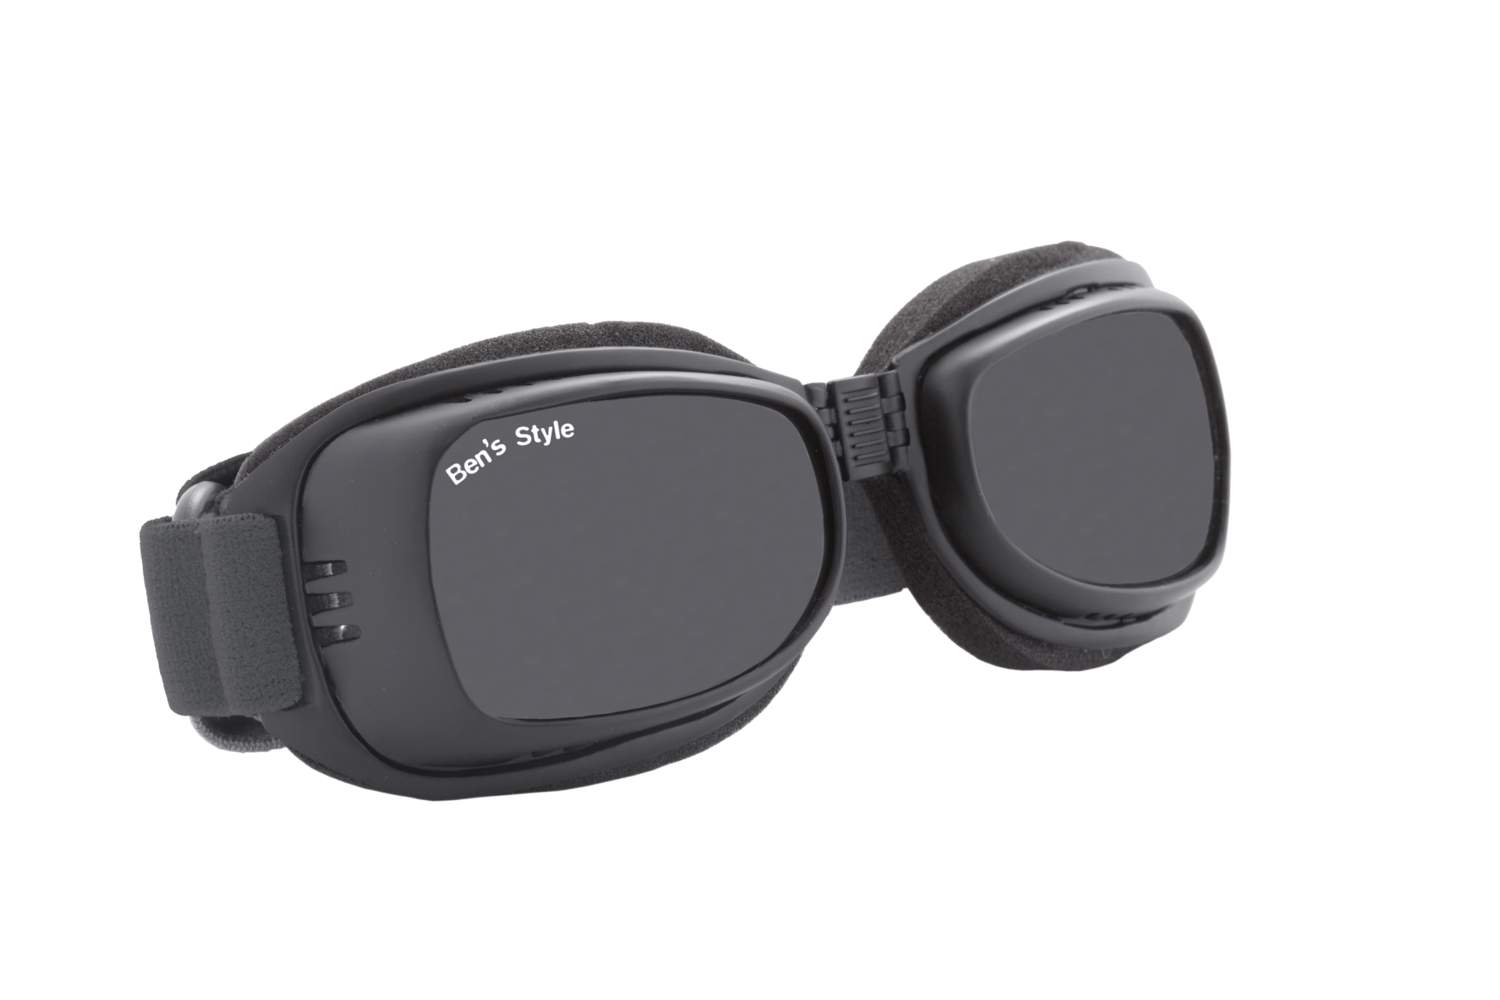 Cool I L -
Hundeschutzbrille Größe L
- Fassung: Schwarz, Gläser: Grau
Größe/Gesamtgewicht: Länge: 20 cm, Breite: 5,5 cm / 64 g